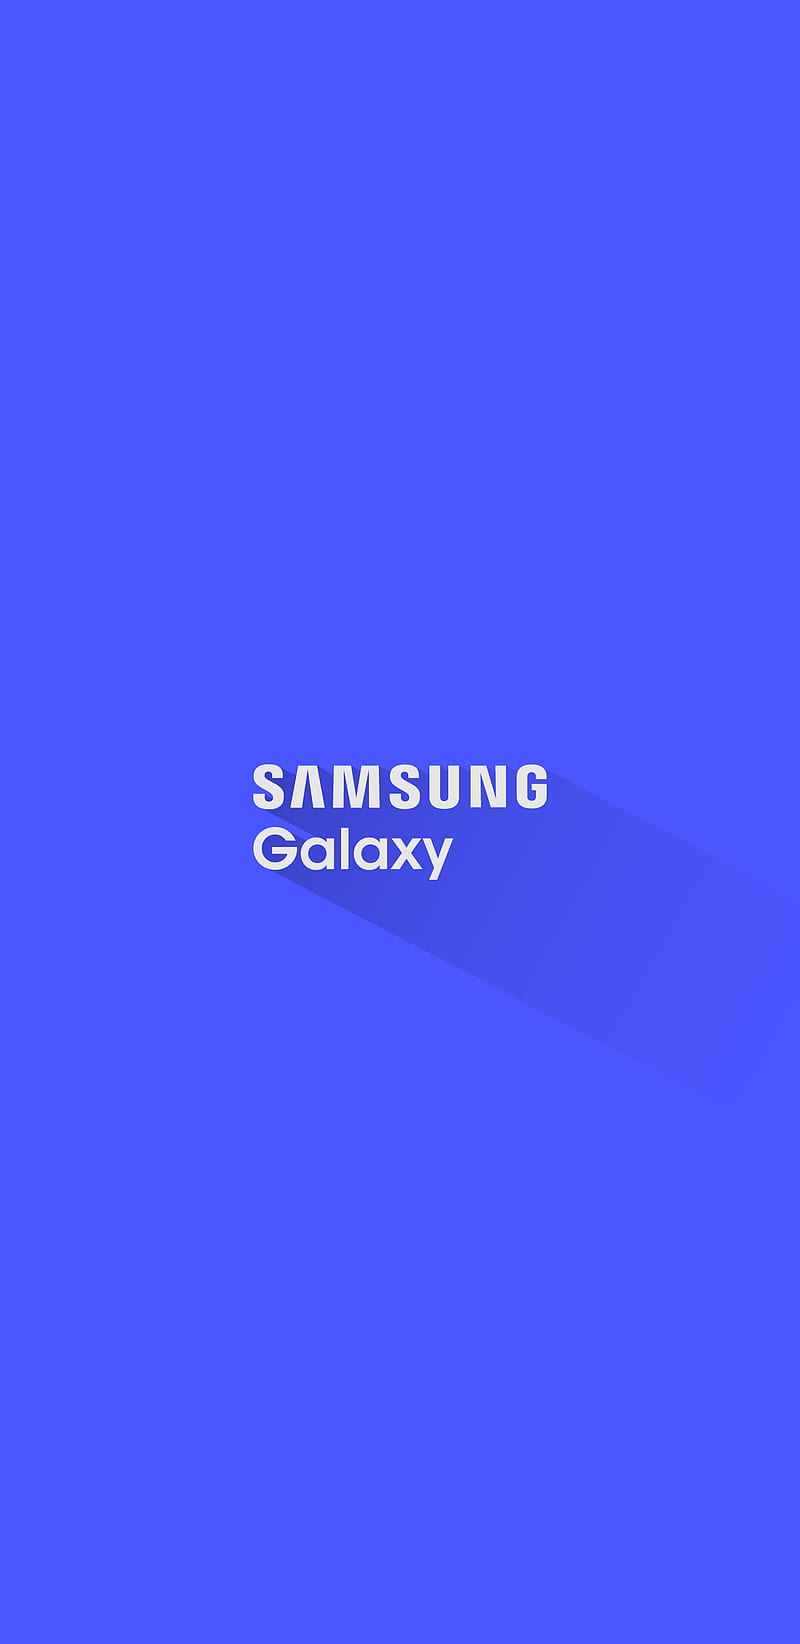 Hình nền điện thoại Samsung Logo, thương hiệu, galaxy, HD Để trang trí cho chiếc điện thoại Samsung của bạn thêm đẹp, hãy tải ngay hình nền Samsung Logo, thương hiệu, galaxy, HD. Với chất lượng hình ảnh sắc nét và màu sắc tươi sáng, chiếc điện thoại của bạn sẽ trở nên đẹp hơn bao giờ hết.